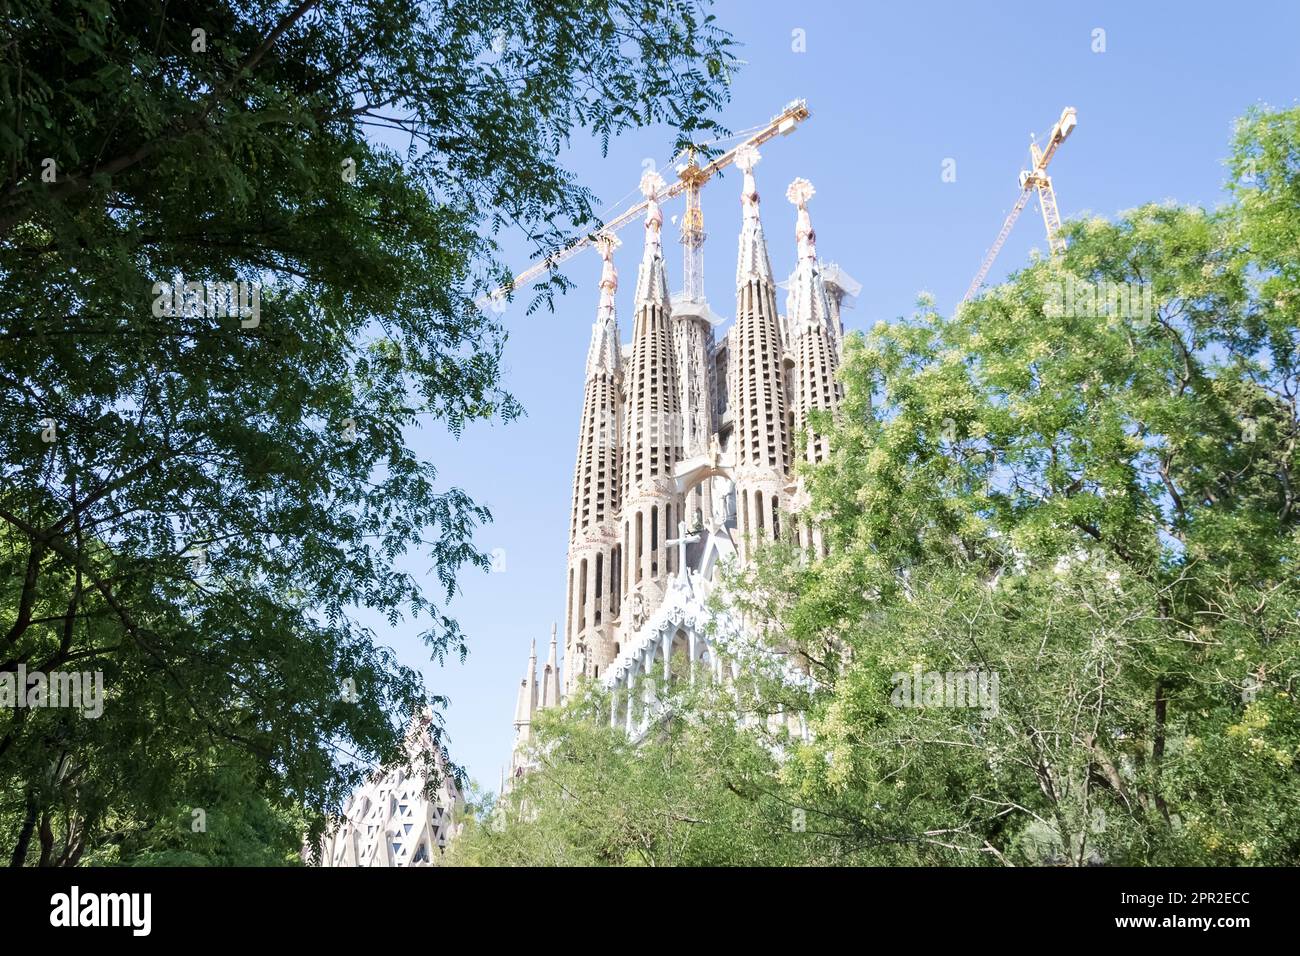 Détail architectural de la Sagrada Família, la plus grande église catholique inachevée du monde située à Eixample, conçue par Antoni Gaudí Banque D'Images